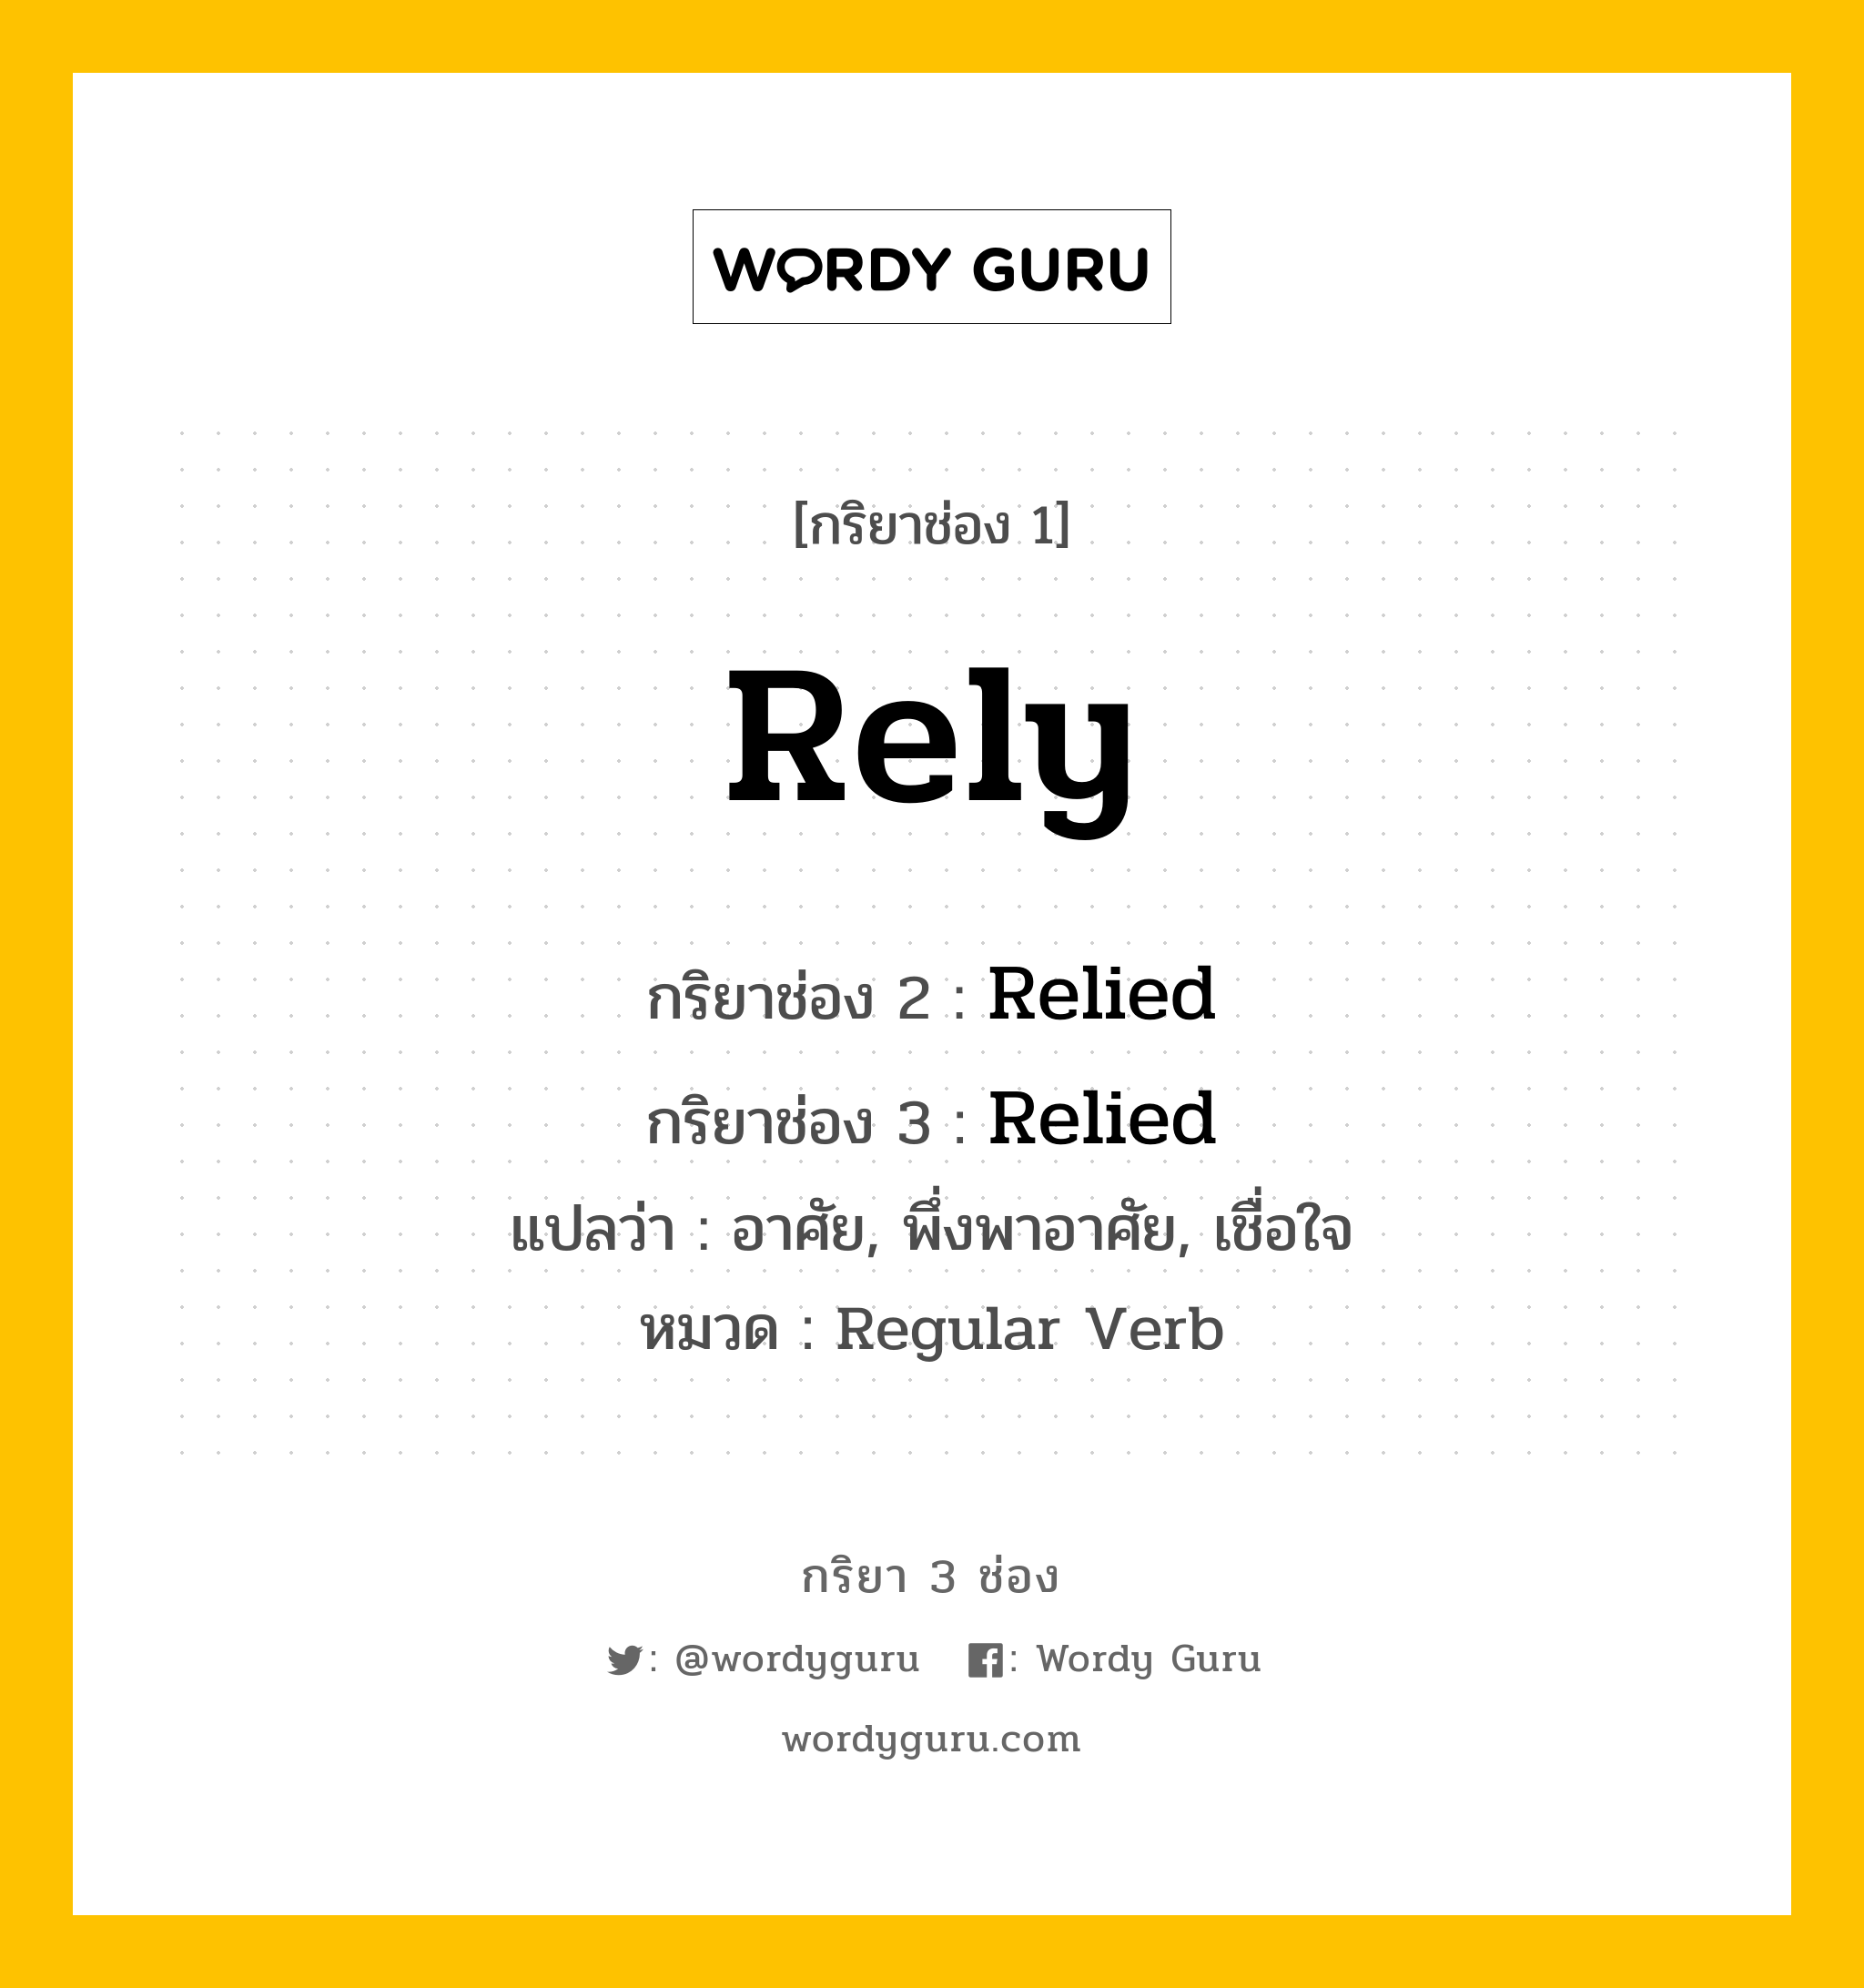 กริยา 3 ช่อง: Rely ช่อง 2 Rely ช่อง 3 คืออะไร, กริยาช่อง 1 Rely กริยาช่อง 2 Relied กริยาช่อง 3 Relied แปลว่า อาศัย, พึ่งพาอาศัย, เชื่อใจ หมวด Regular Verb หมวด Regular Verb